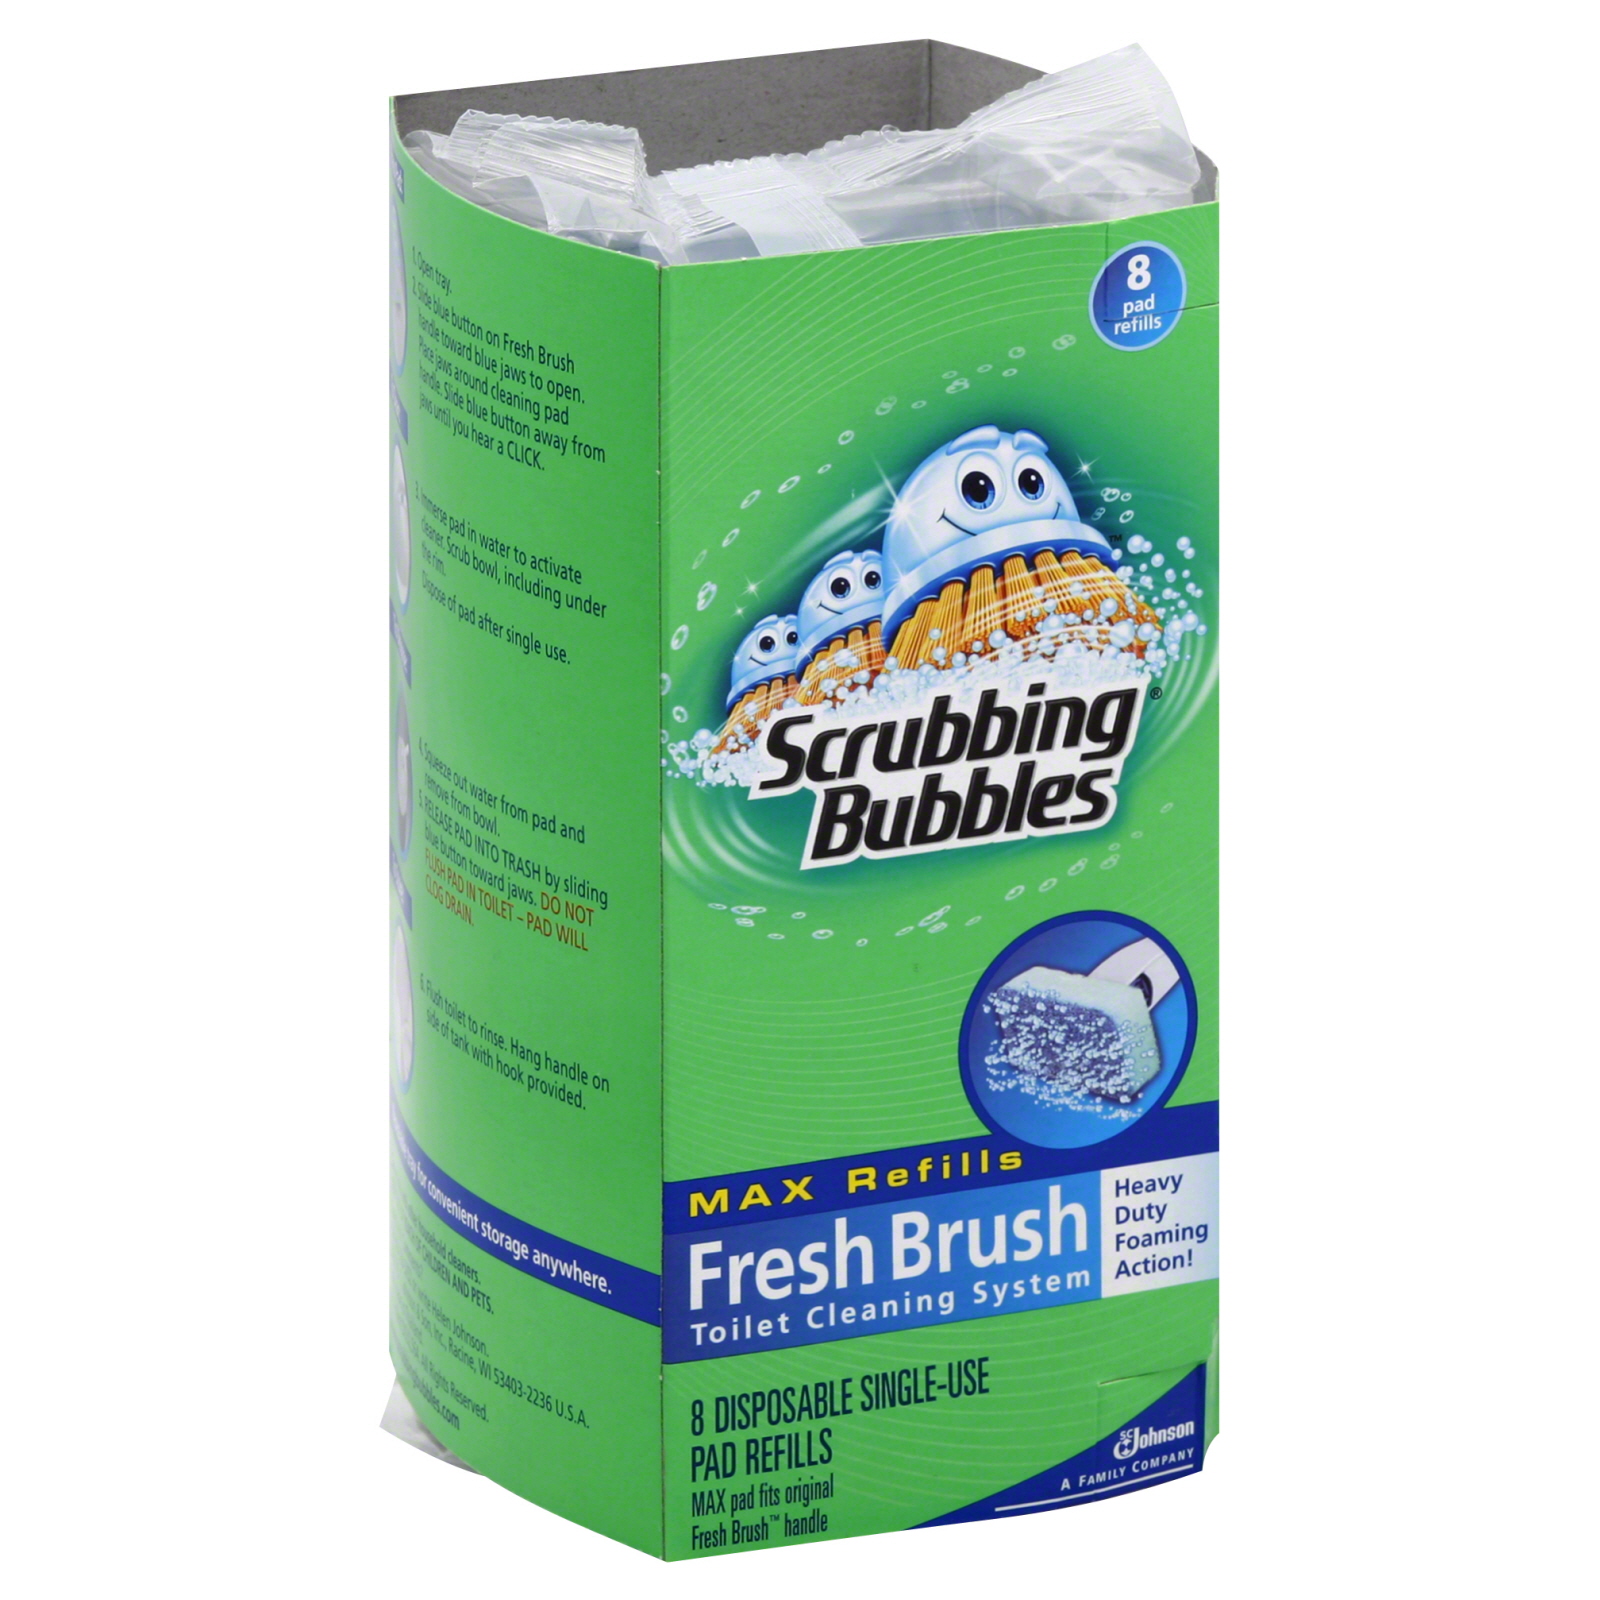 Scrubbing Bubbles Fresh Brush Max Refill 8 count